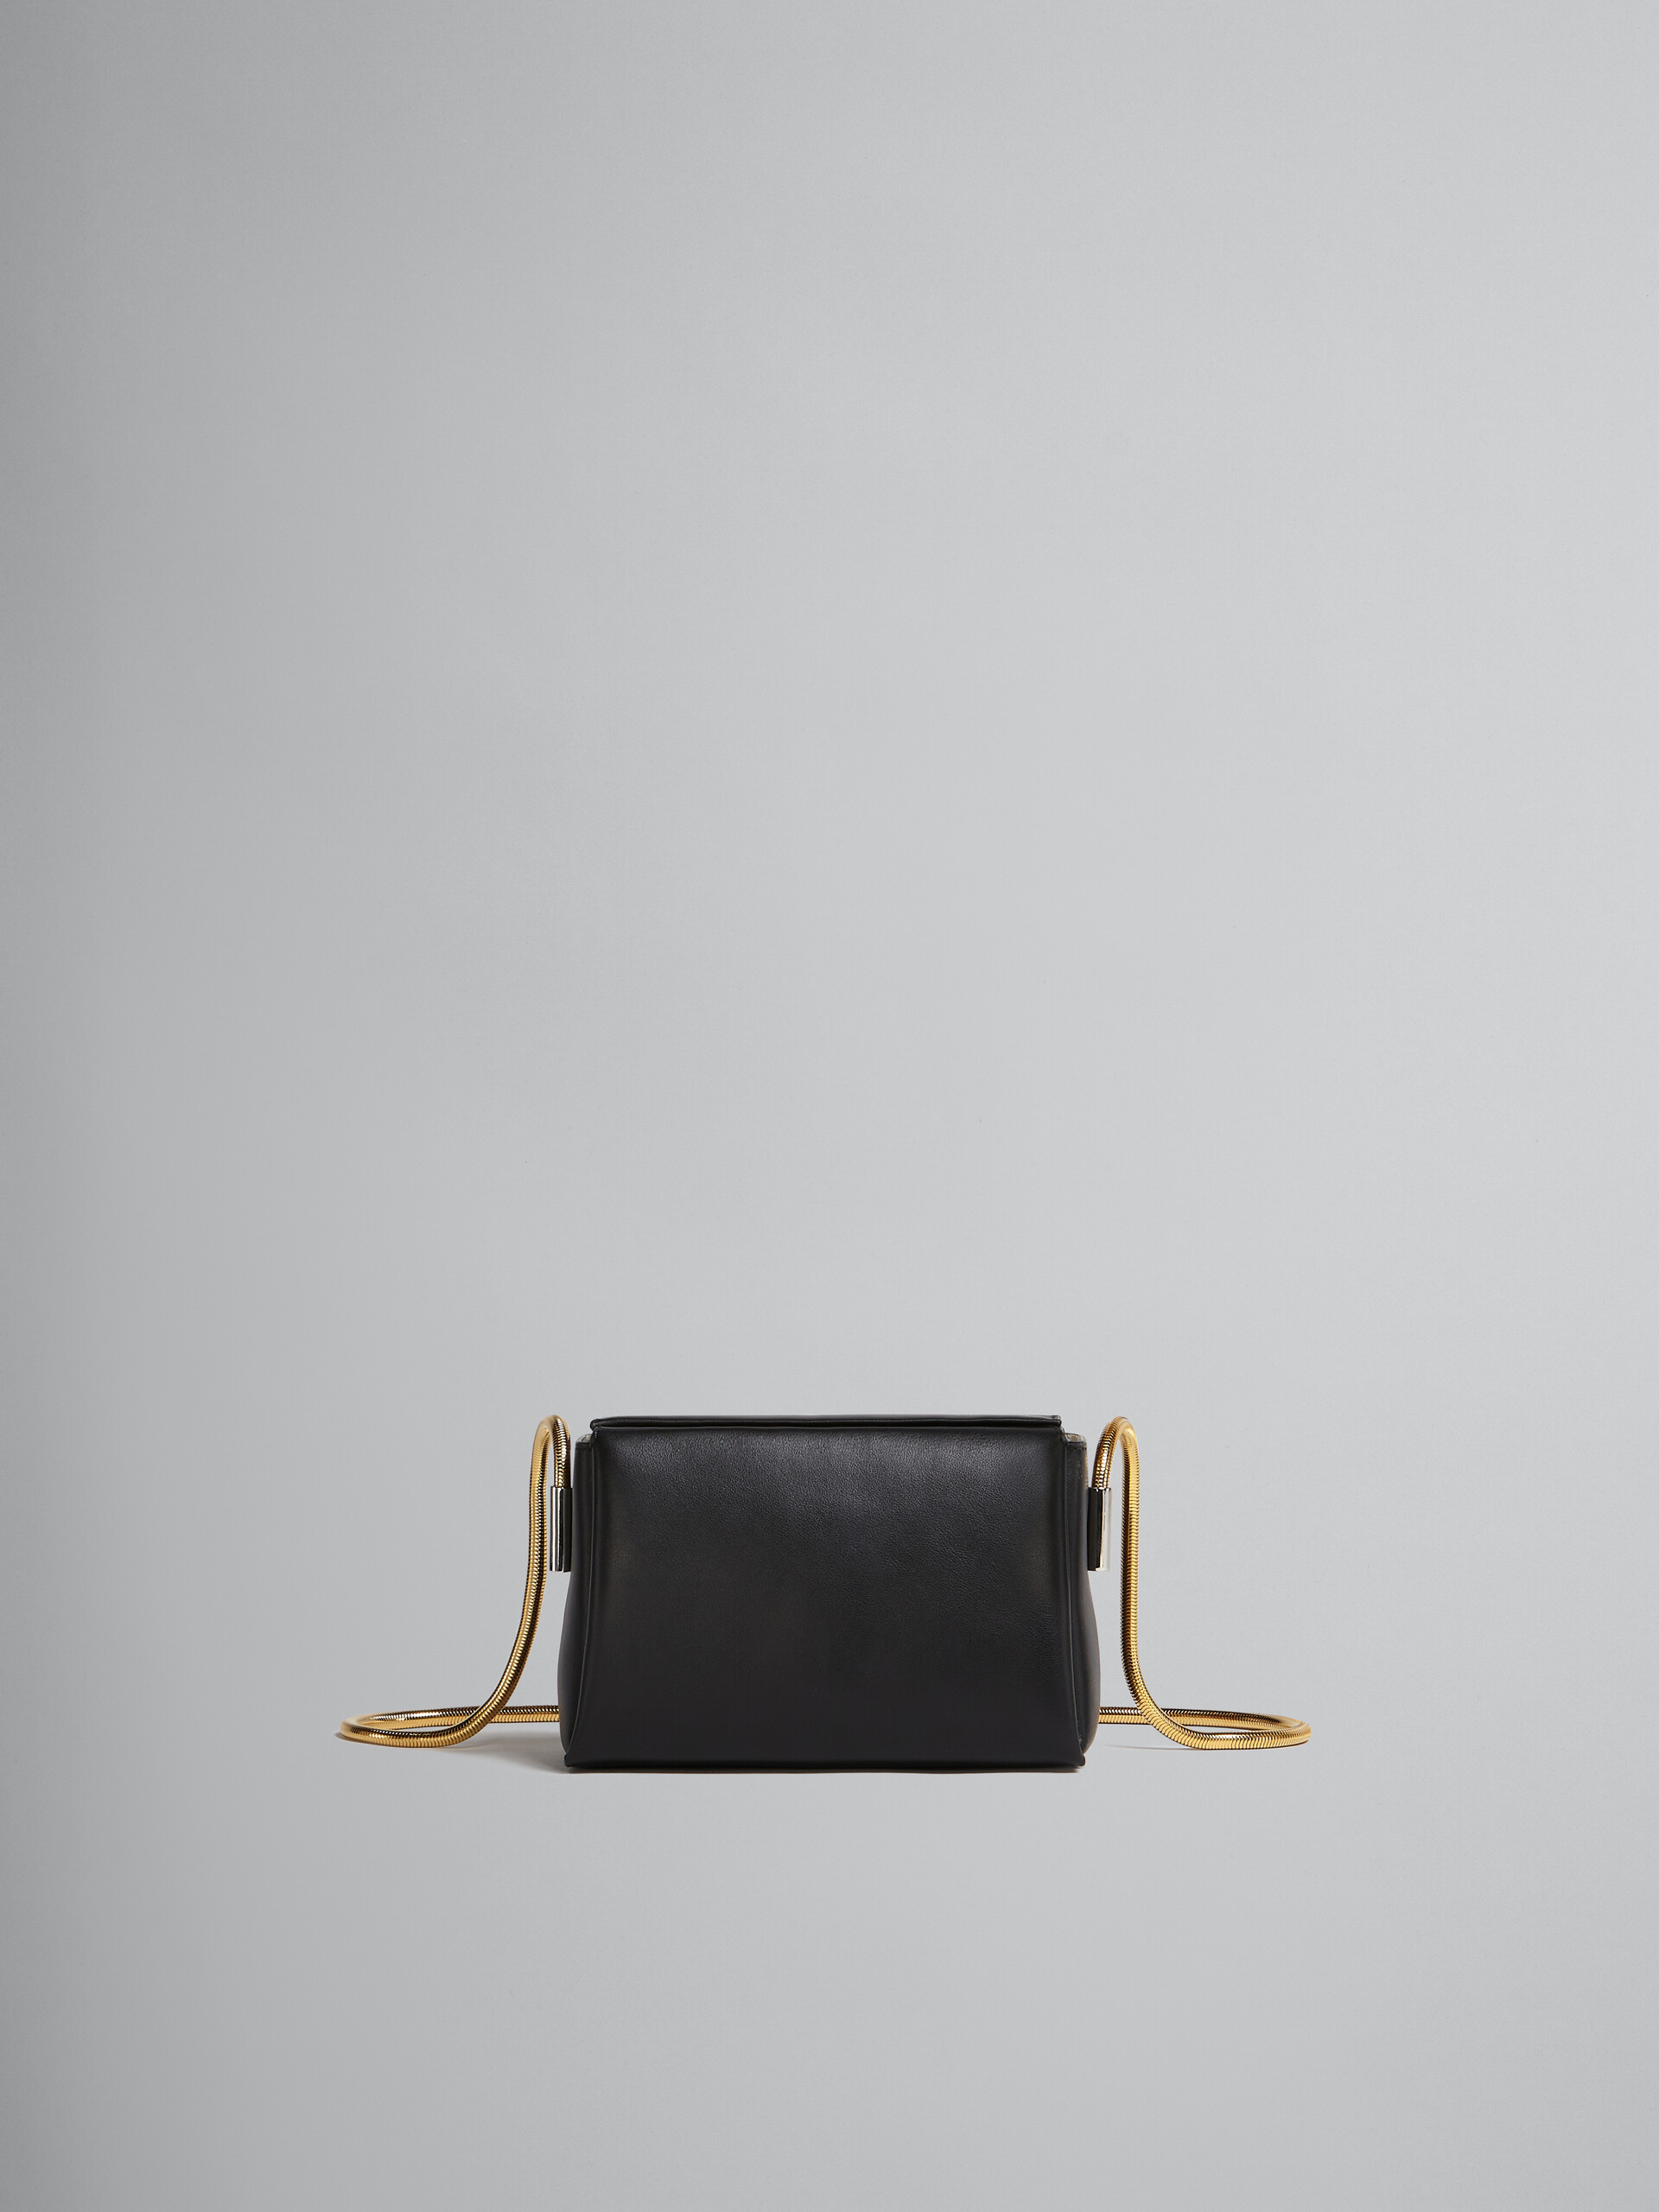 Toggle Small Bag in black leather - Shoulder Bag - Image 1